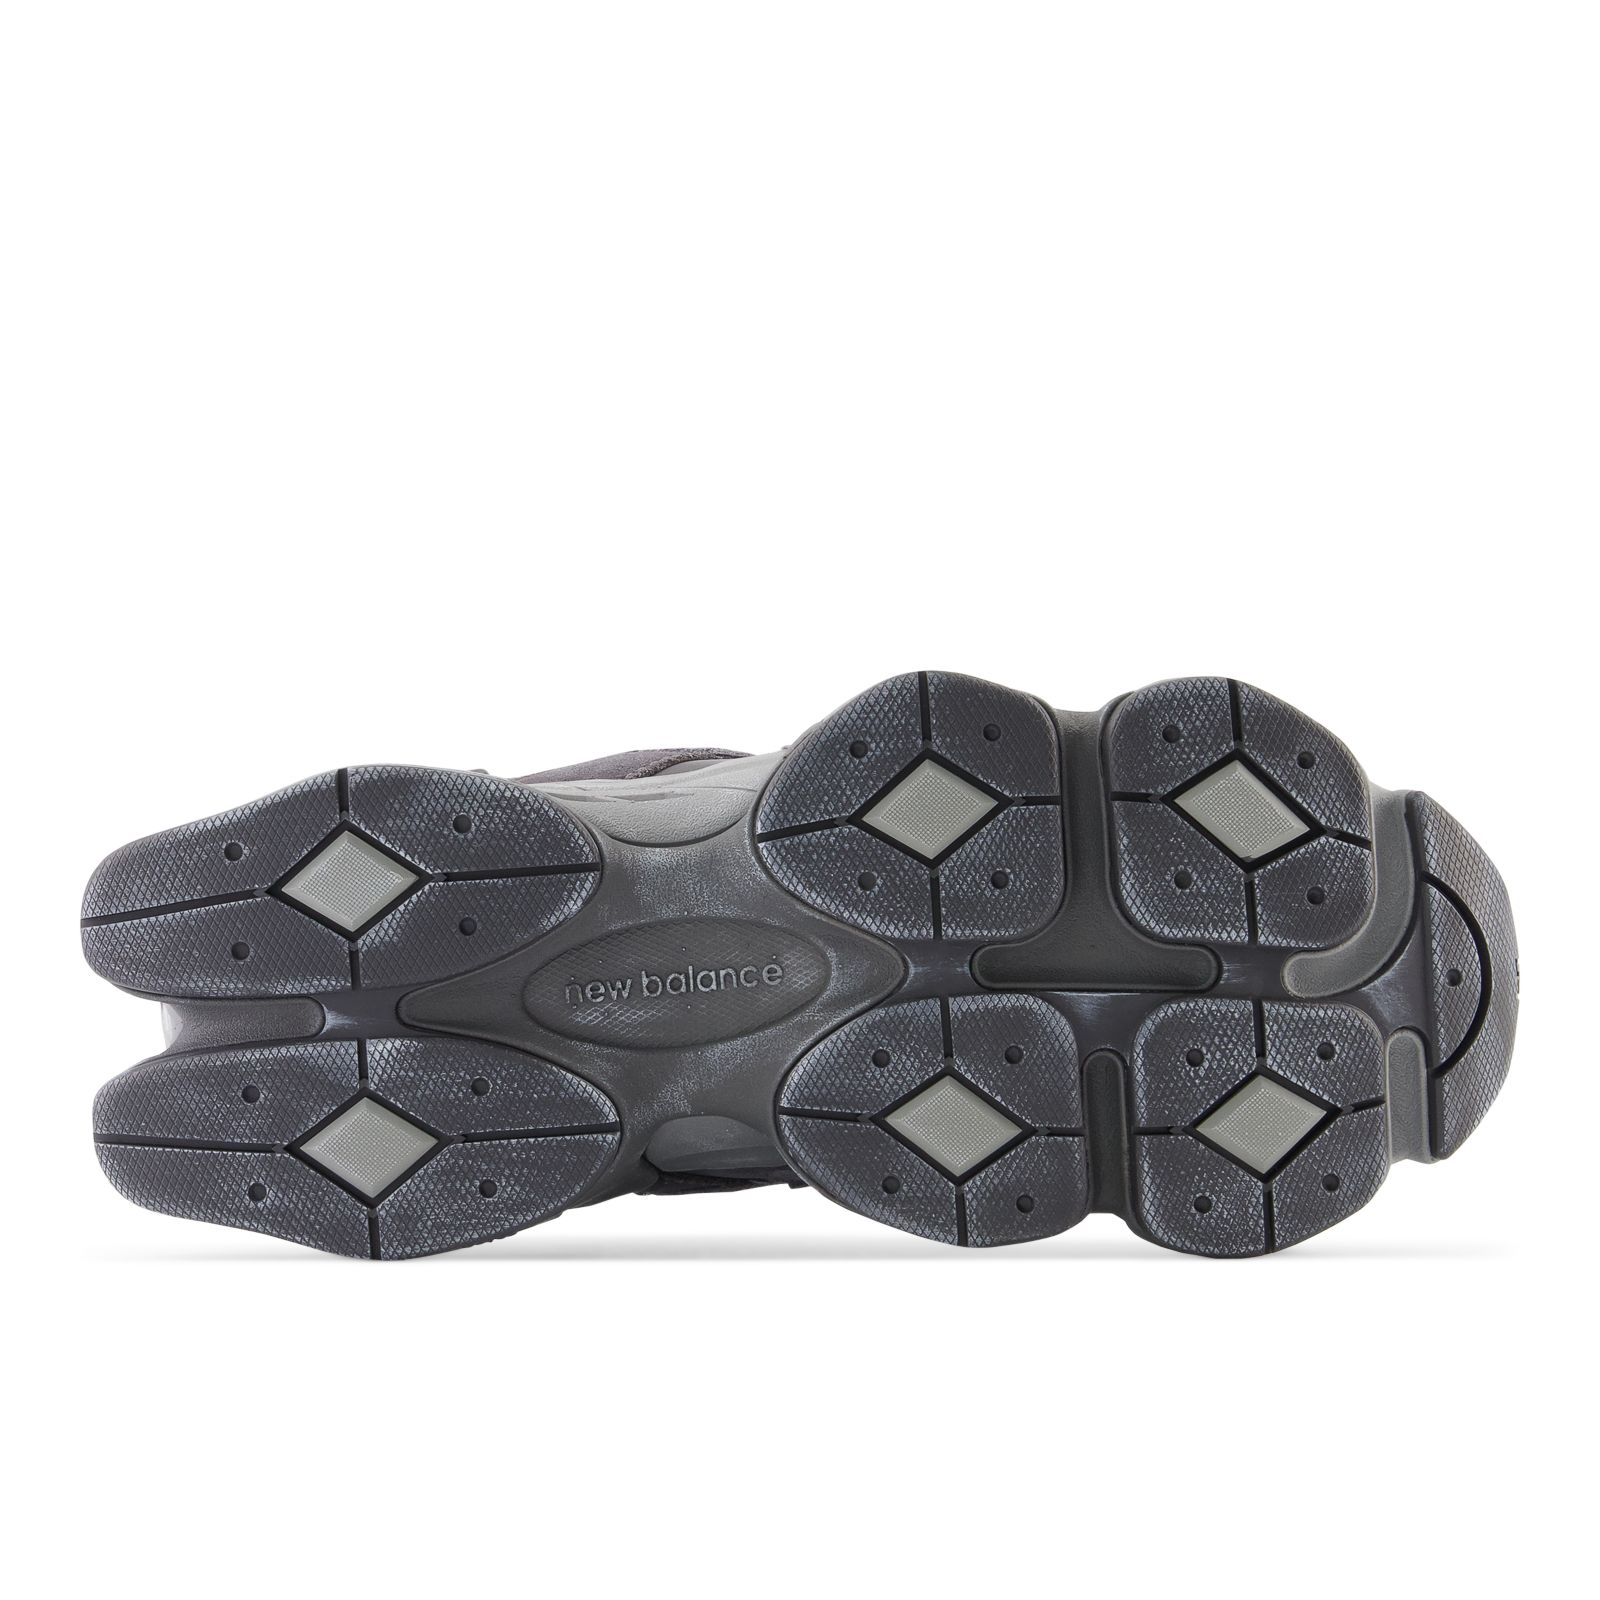 Unisex 9060 Shoes - New Balance